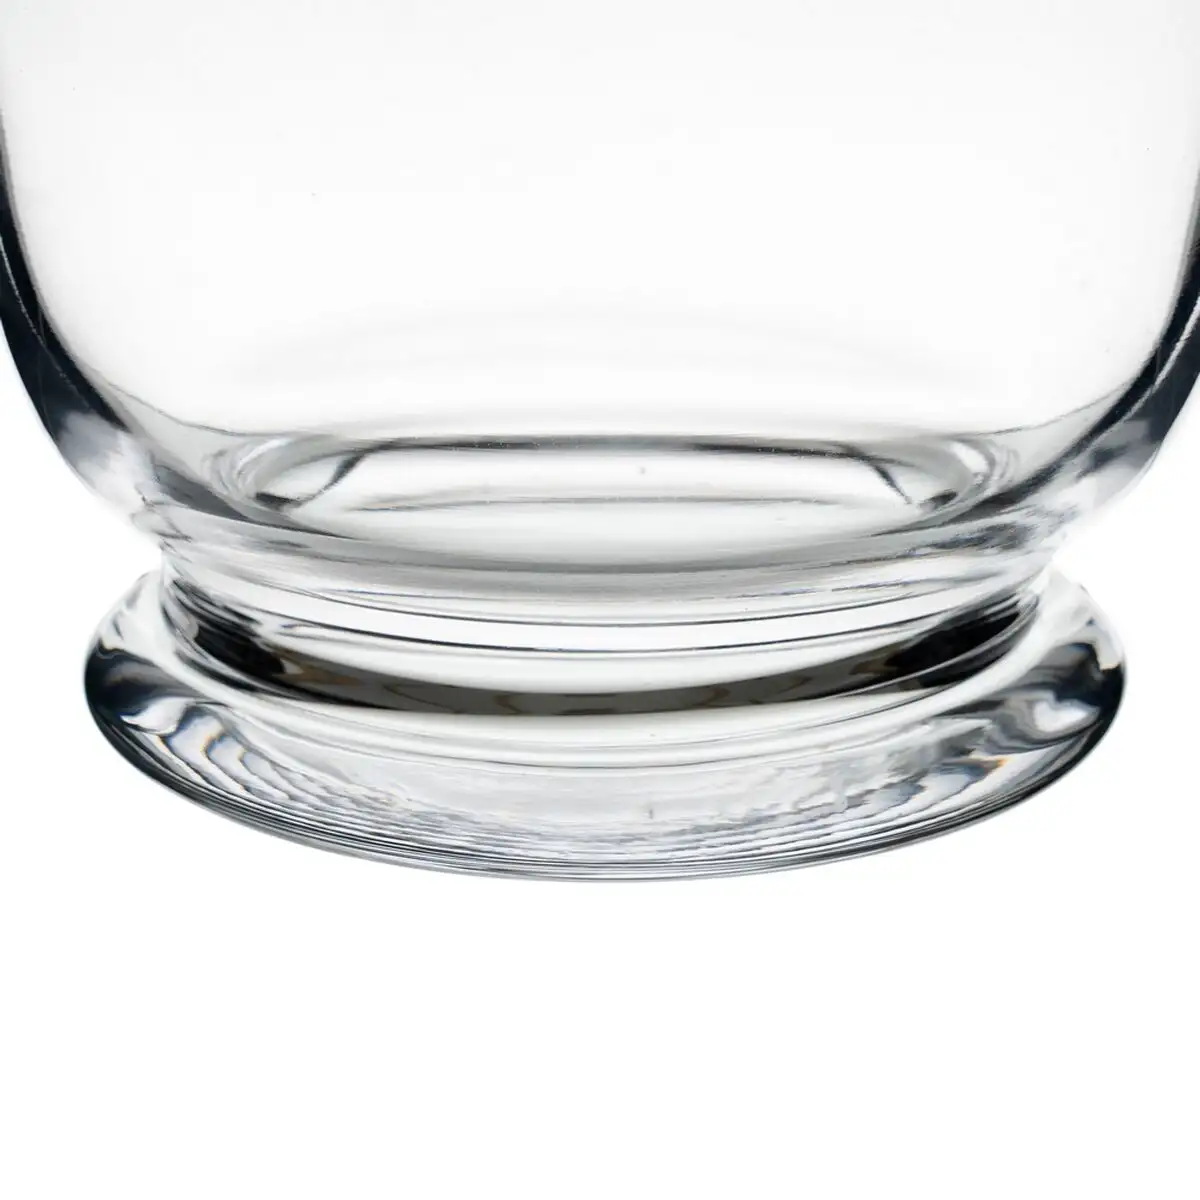 Vase cristal transparent 22 x 22 x 28 cm_6079. DIAYTAR SENEGAL - L'Art de Vivre le Shopping Inspiré. Parcourez notre catalogue et choisissez des produits qui reflètent votre passion pour la beauté et l'authenticité.